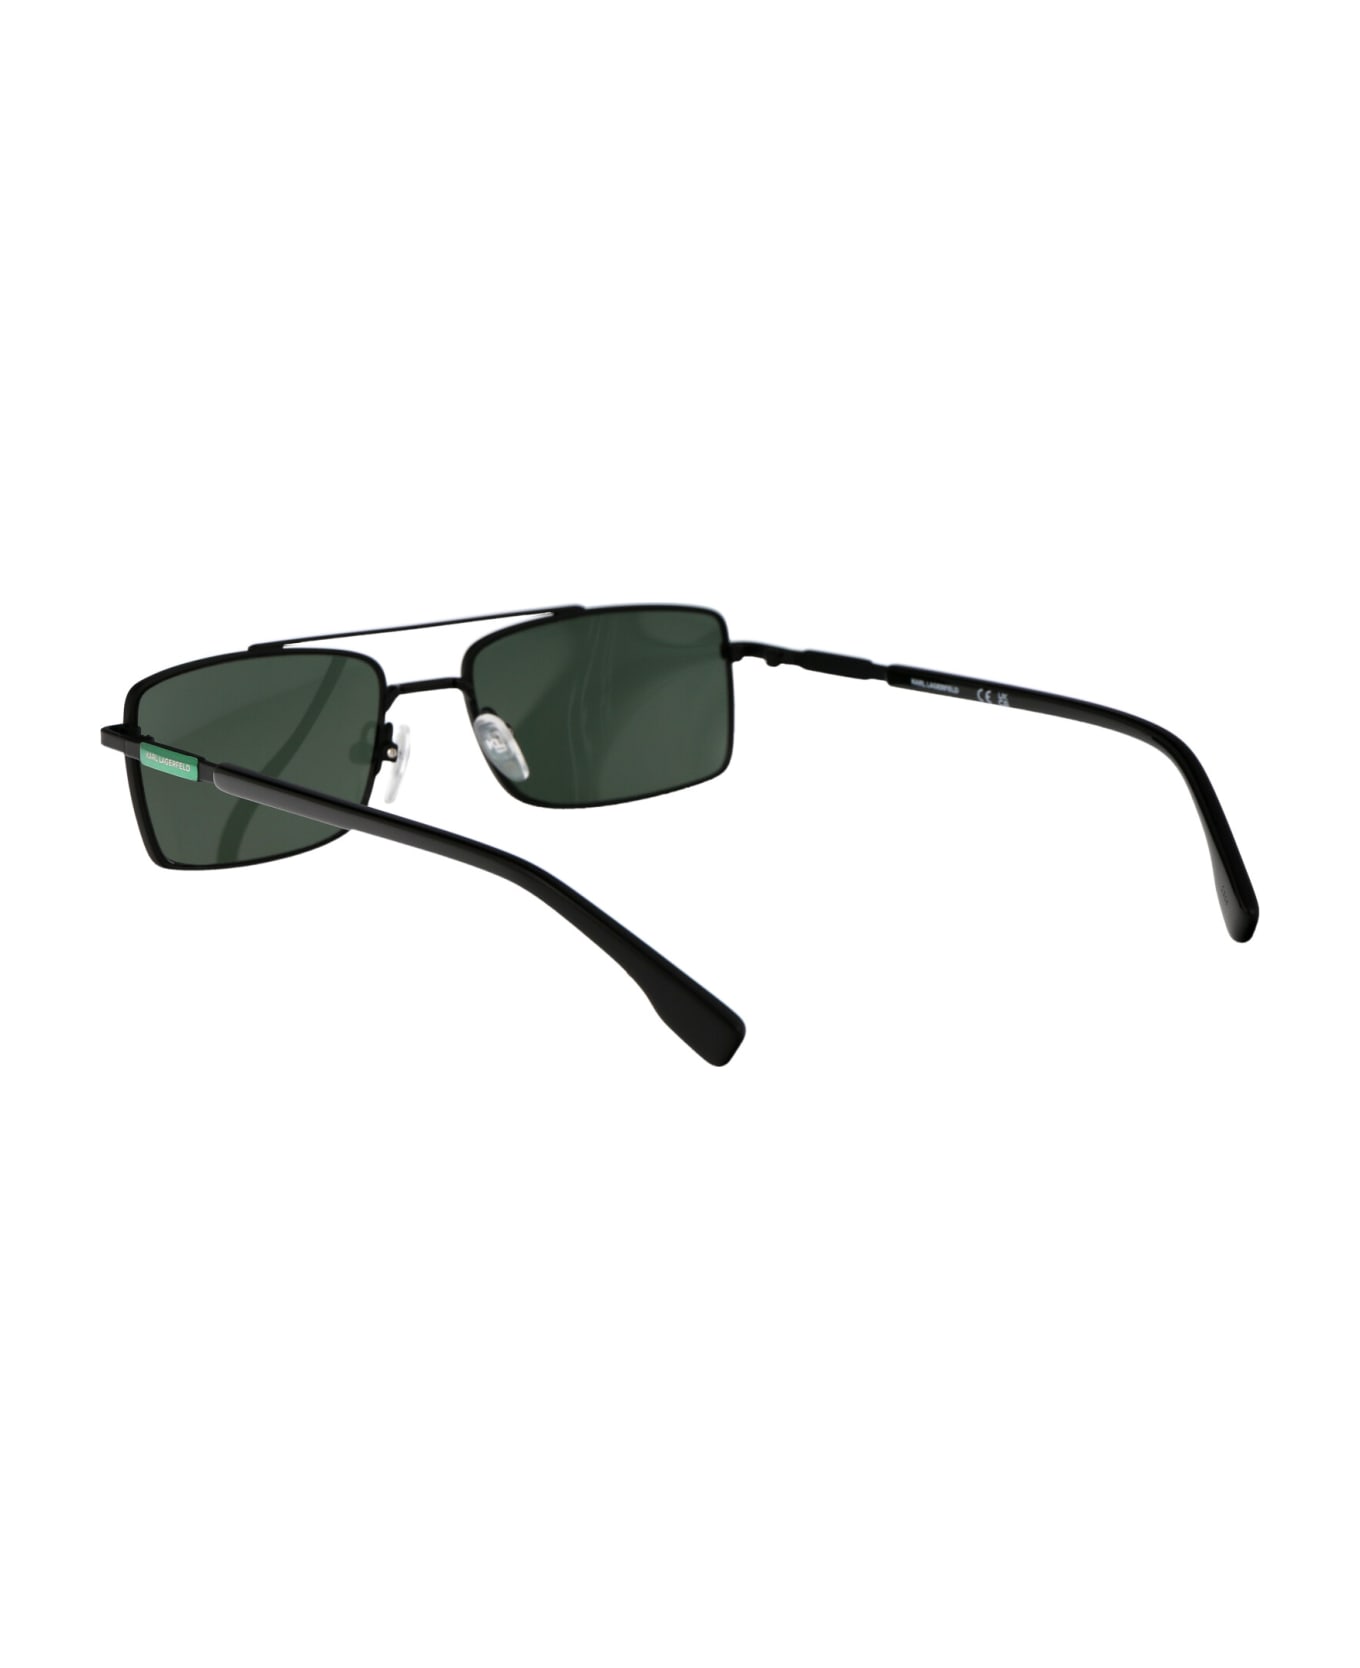 Karl Lagerfeld Kl348s Sunglasses - 002 BLACK